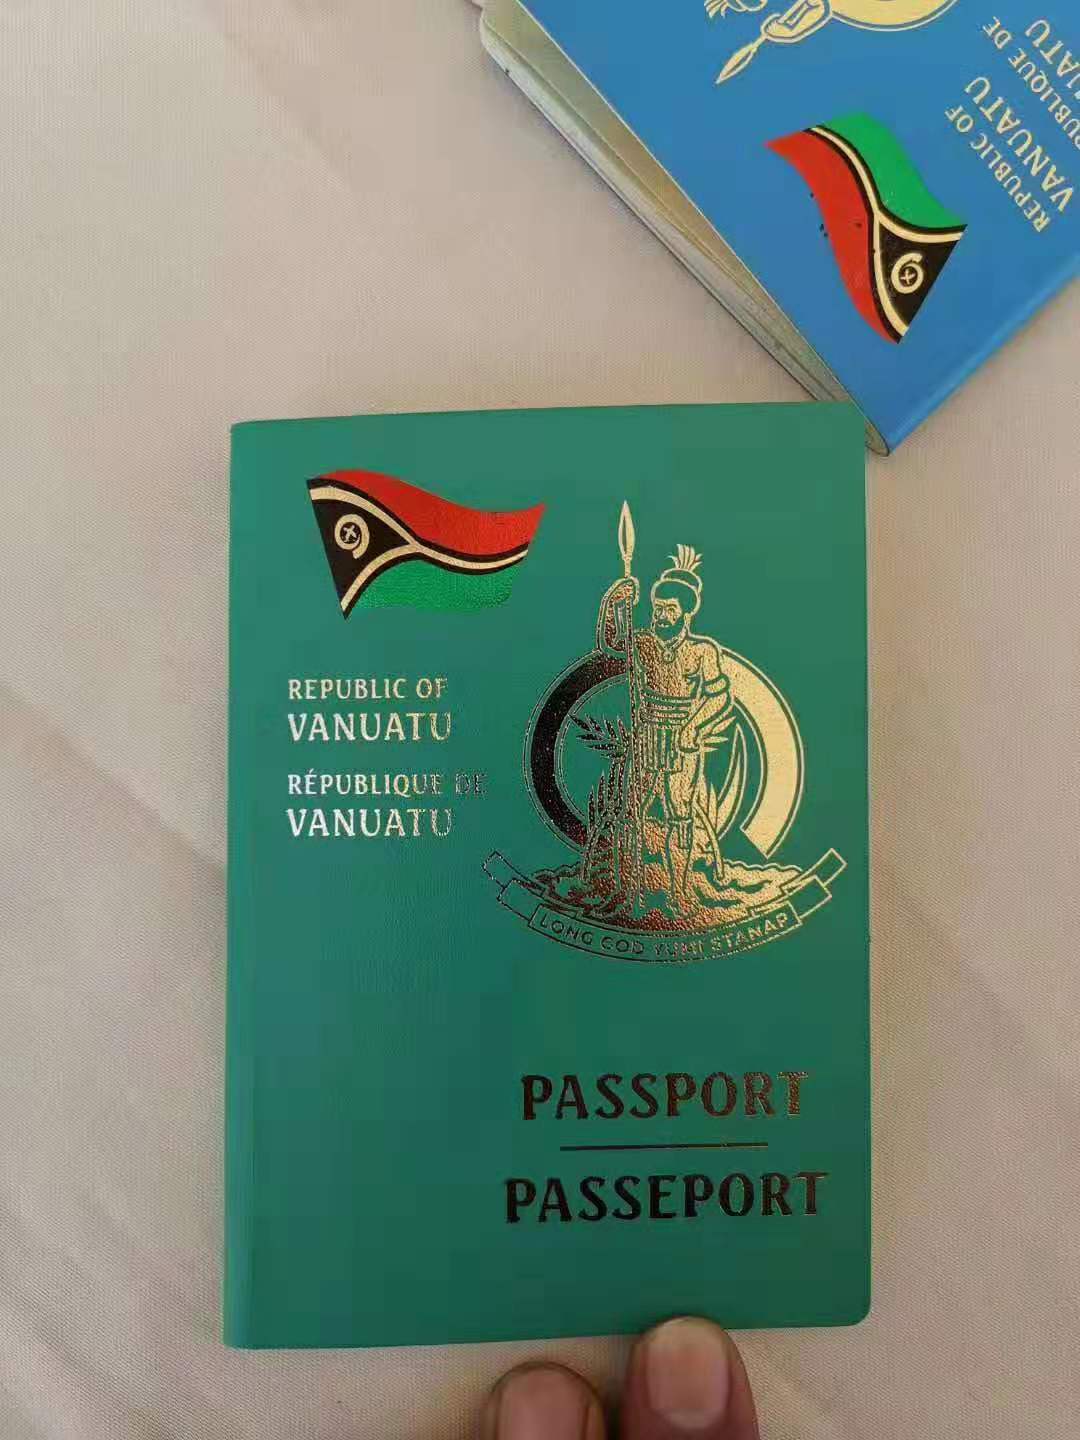 热烈恭贺w先生在8月10日通过拉美出国成功办理瓦努阿图护照移民项目